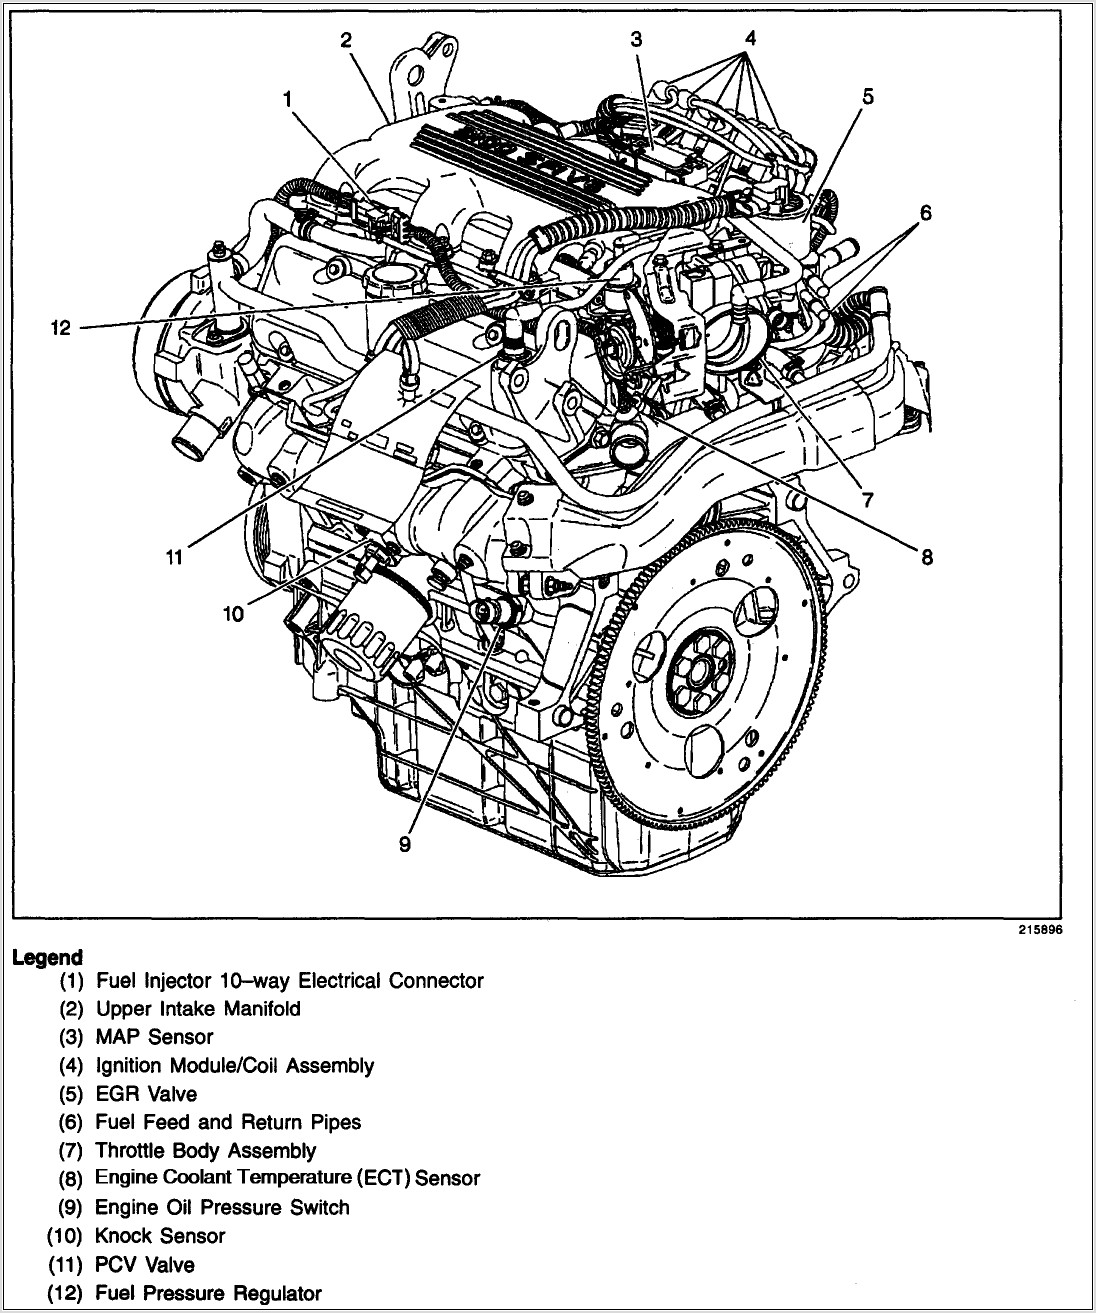 3100 Sfi V6 Engine Diagram